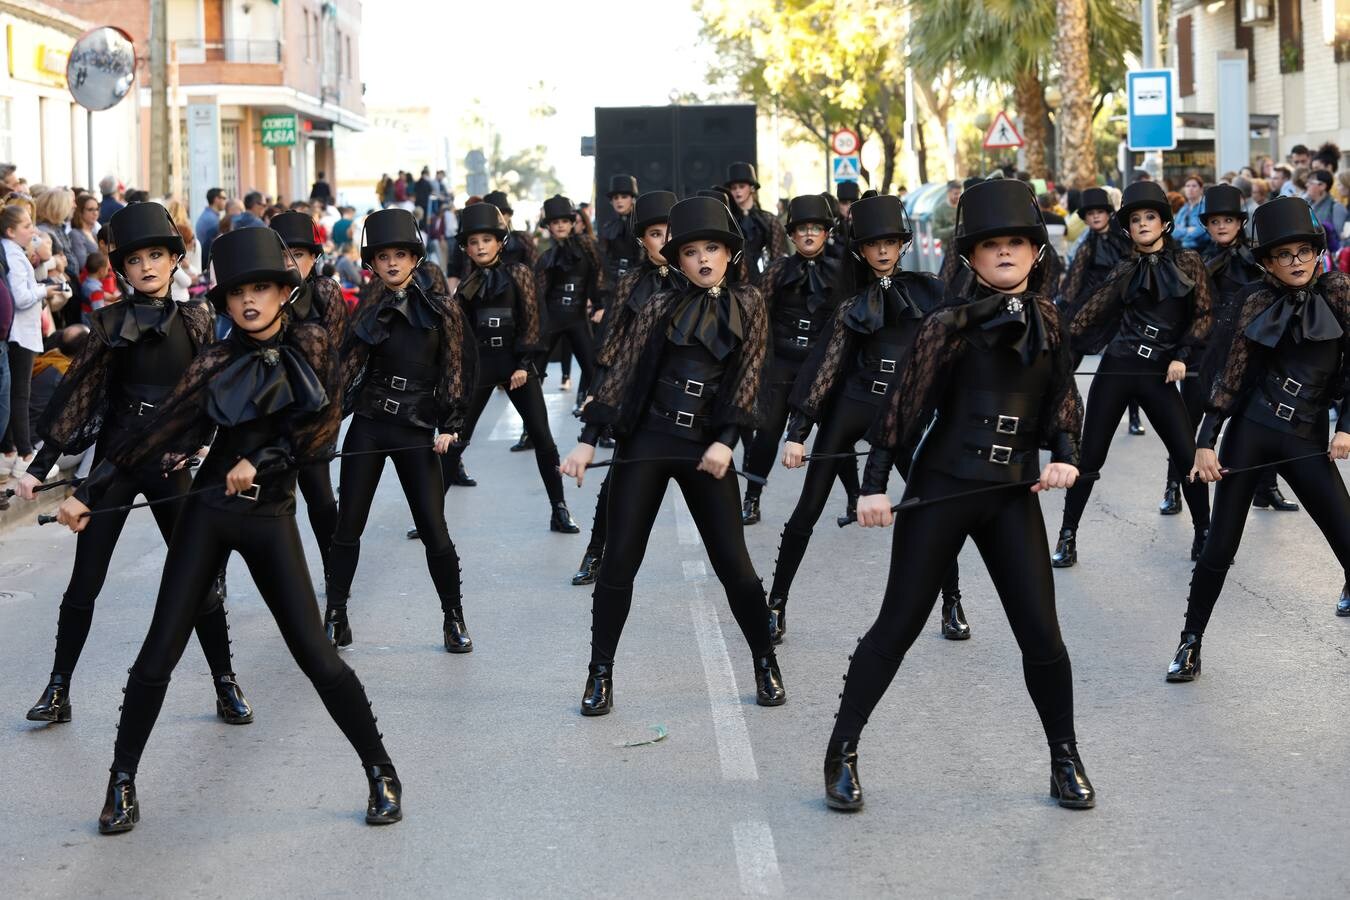 El humor y la actualidad no faltaron al primer gran desfile de Carnaval de la pedanía murciana. El grupo 'El Mejillón Colorao' hizo una parodia de la exhumación de Franco